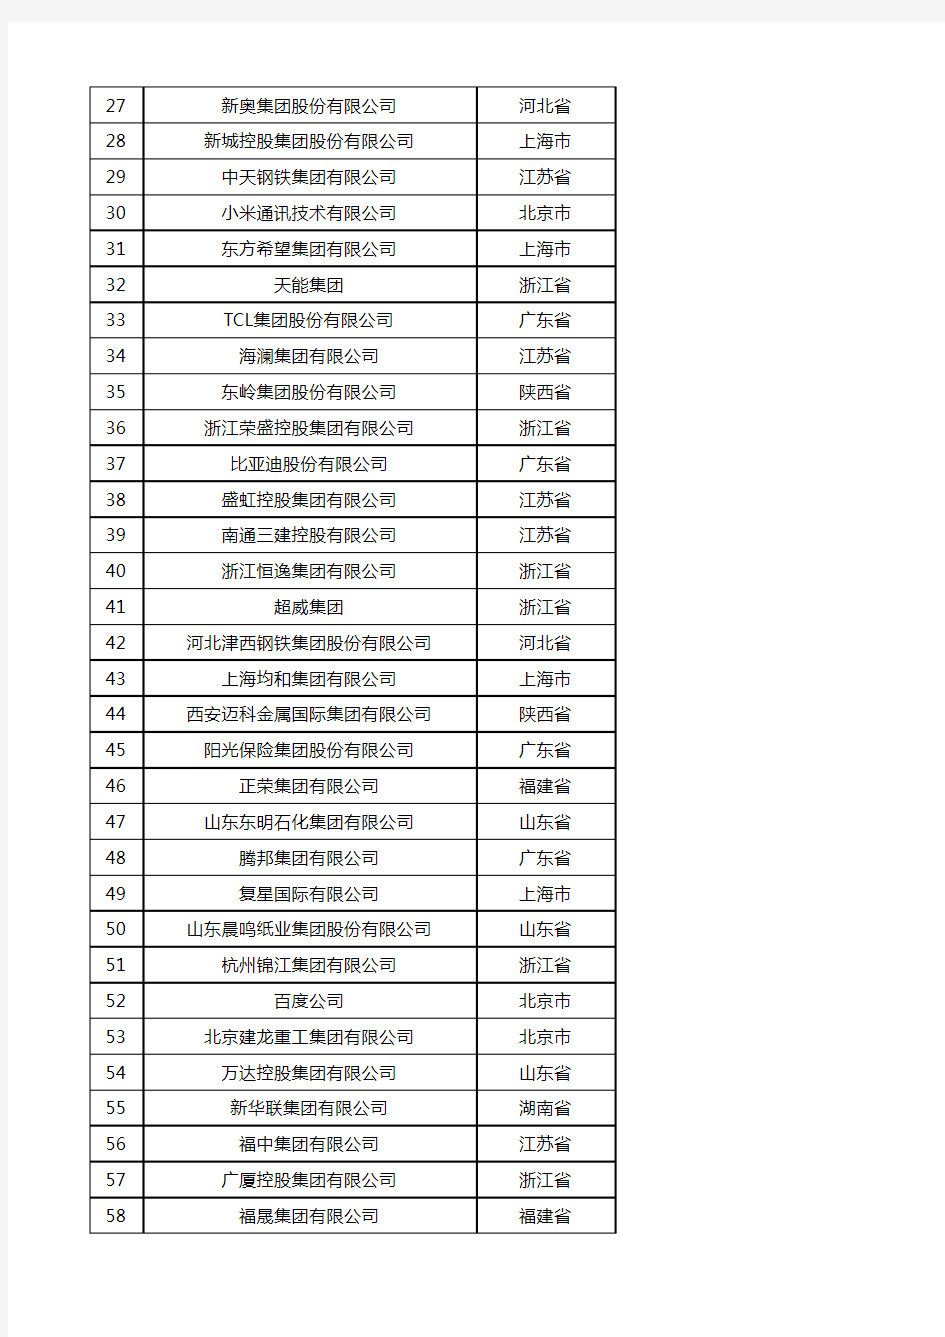 2018中国民营企业500强榜单(EXCEL版本)